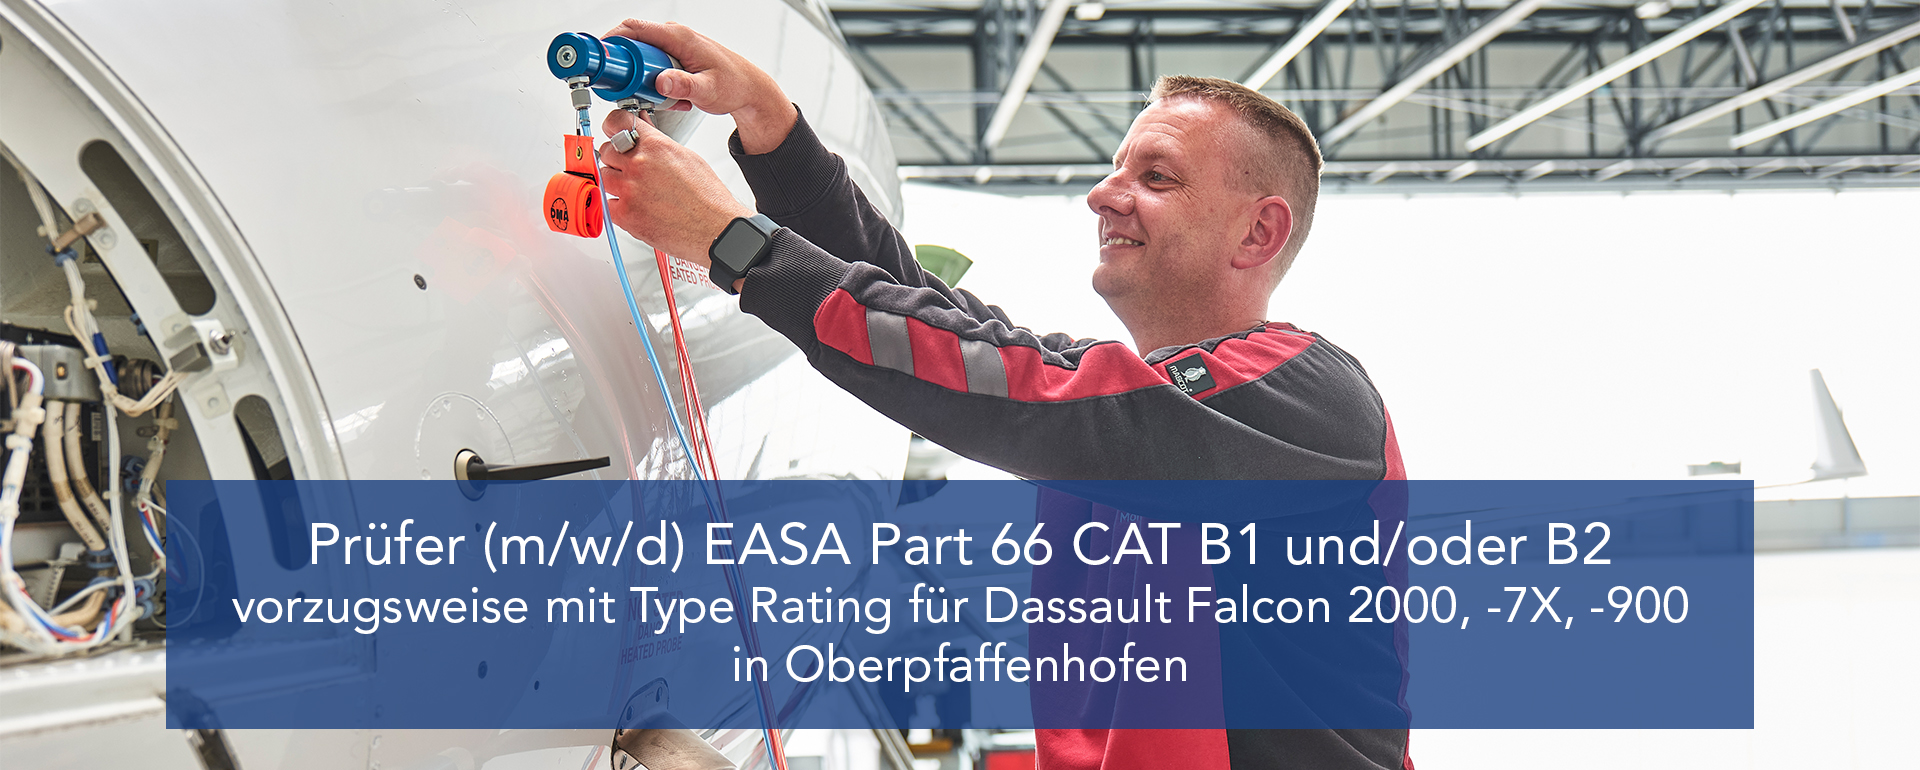 Prüfer (m/w/d) EASA Part 66 CAT B1 und/oder B2, vorzugsweise mit Type Rating für Dassault Falcon -2000, 7X, 900